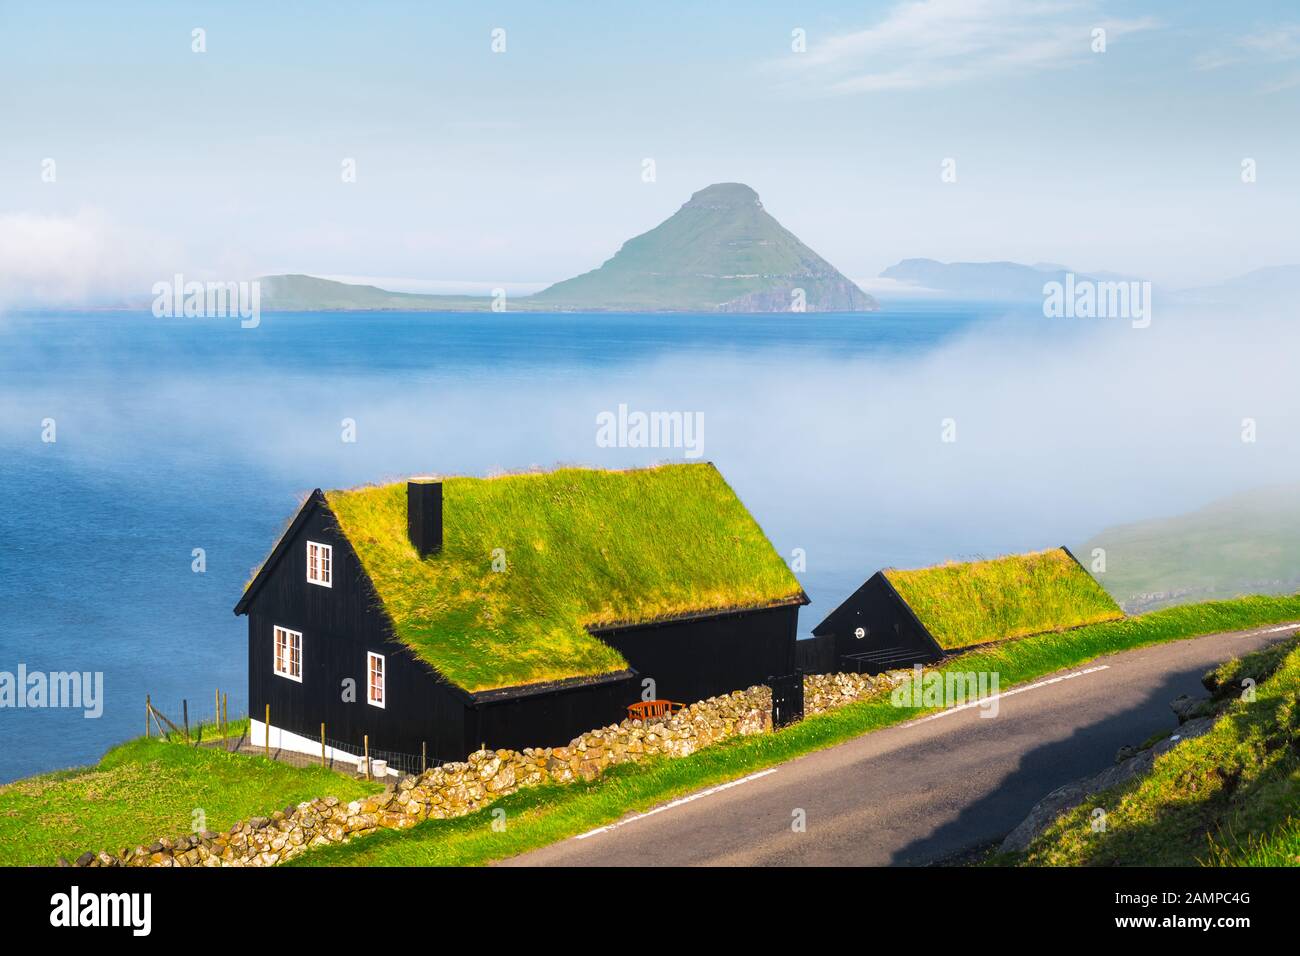 Mattinata nebbiosa vista di una casa con il tipico turf-top tetto di erba nel villaggio Velbastadur sull isola di Streymoy, isole Faerøer, Danimarca. Fotografia di paesaggi Foto Stock